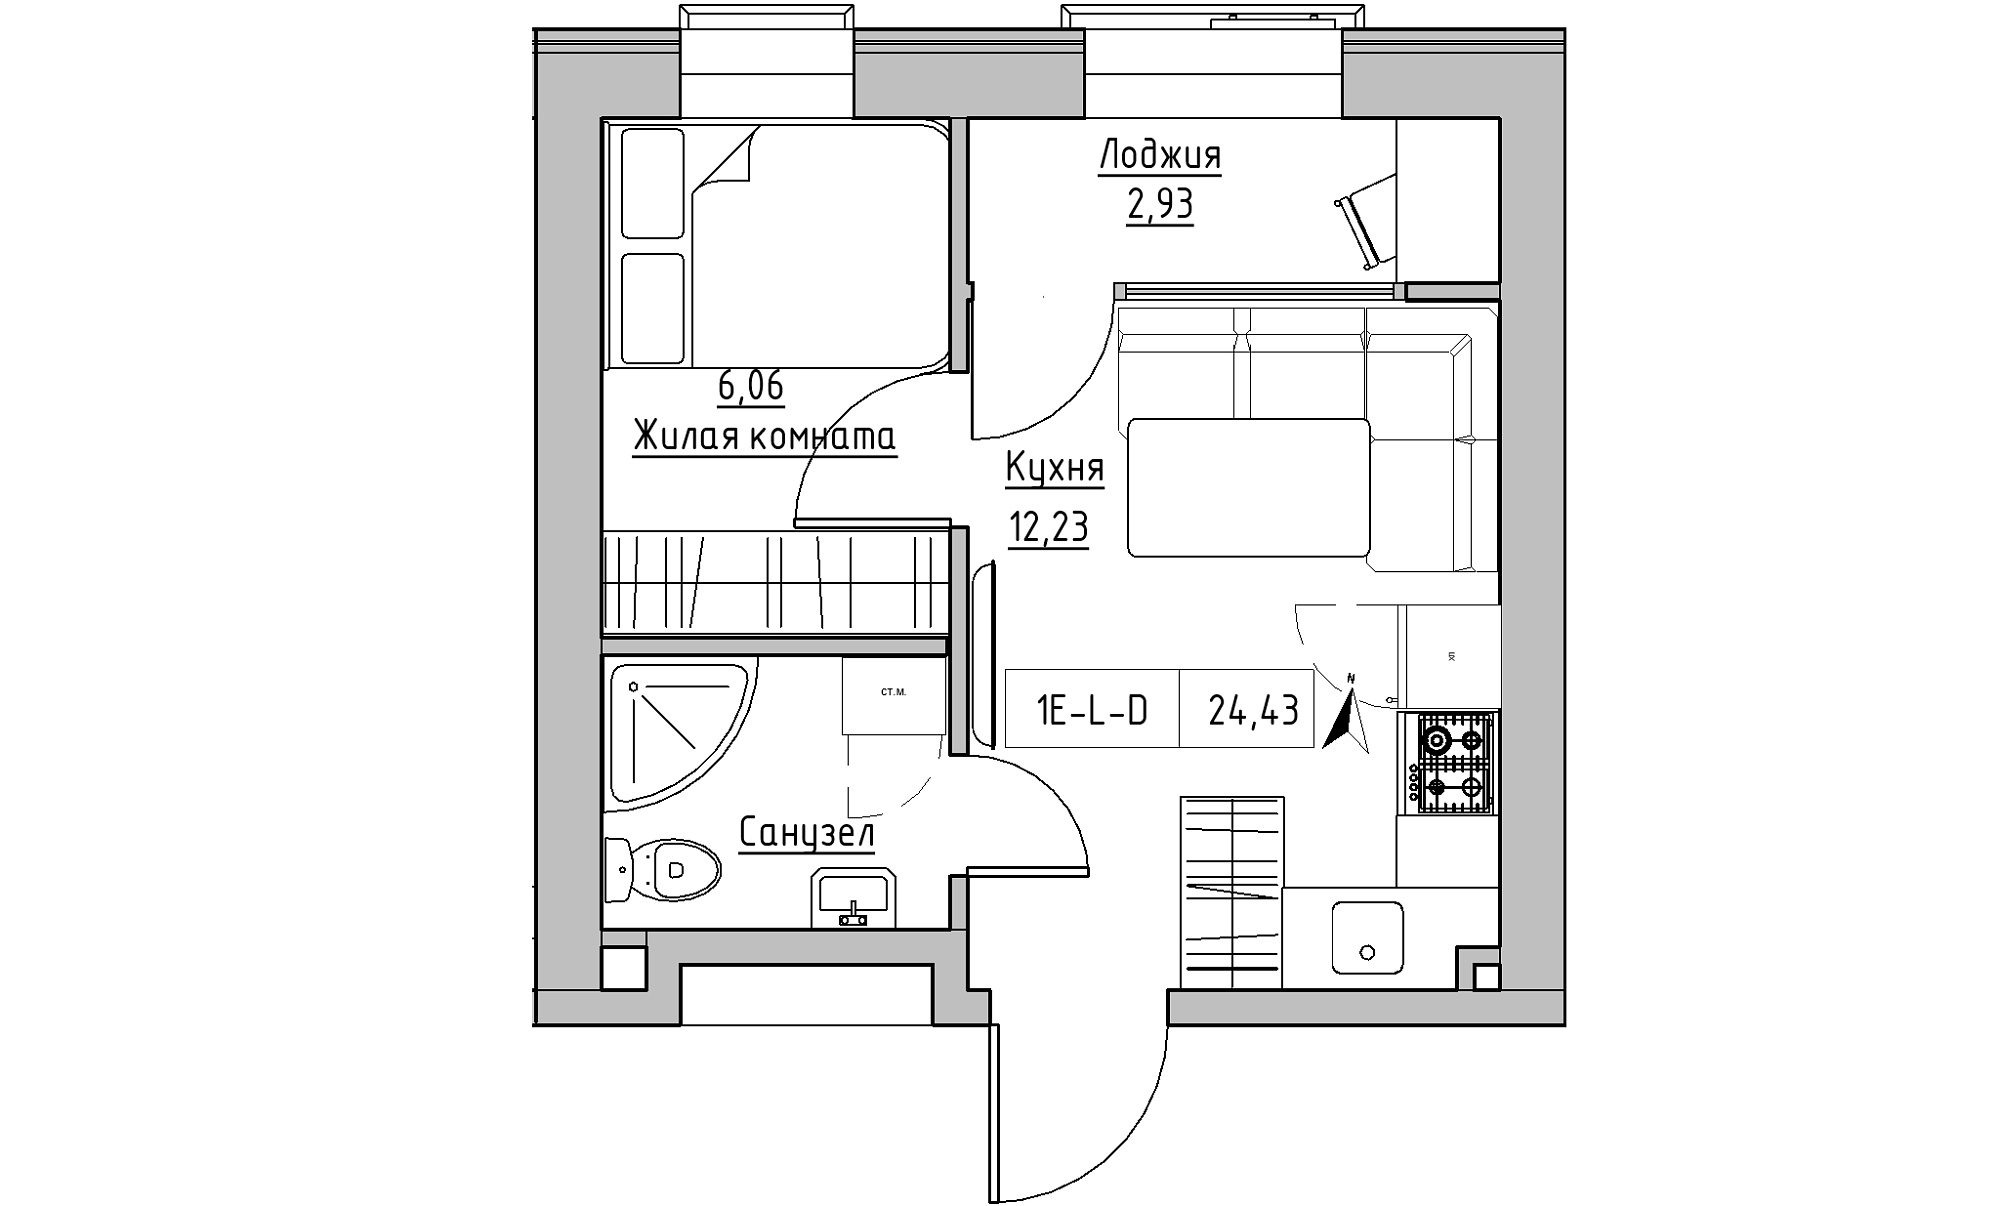 Планування 1-к квартира площею 24.43м2, KS-023-02/0016.